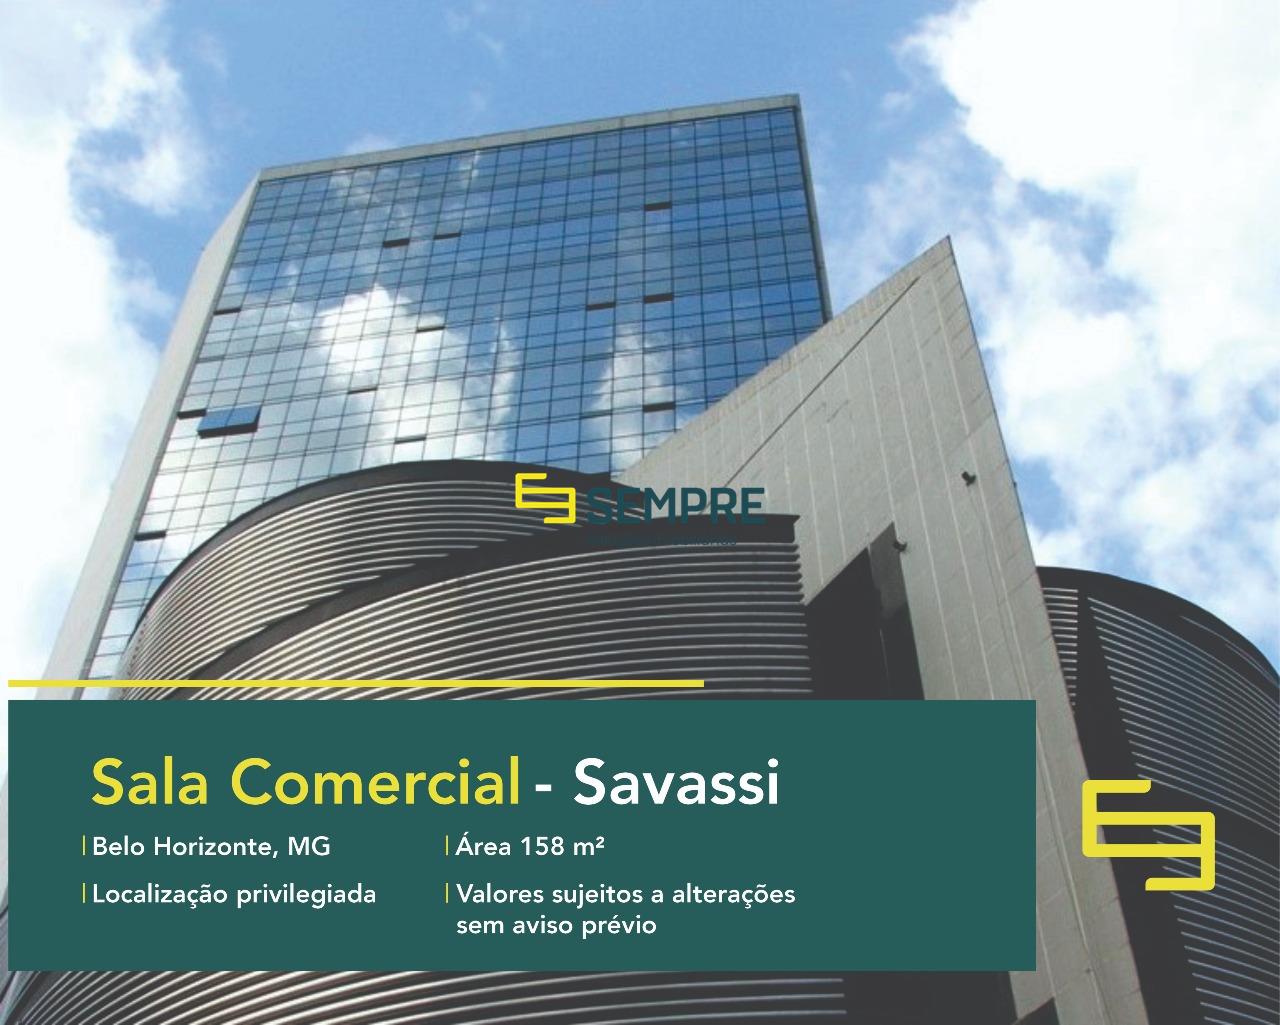 Sala comercial para alugar na Savassi em BH, excelente localização! O prédio comercial conta, sobretudo, com área de 158 m².